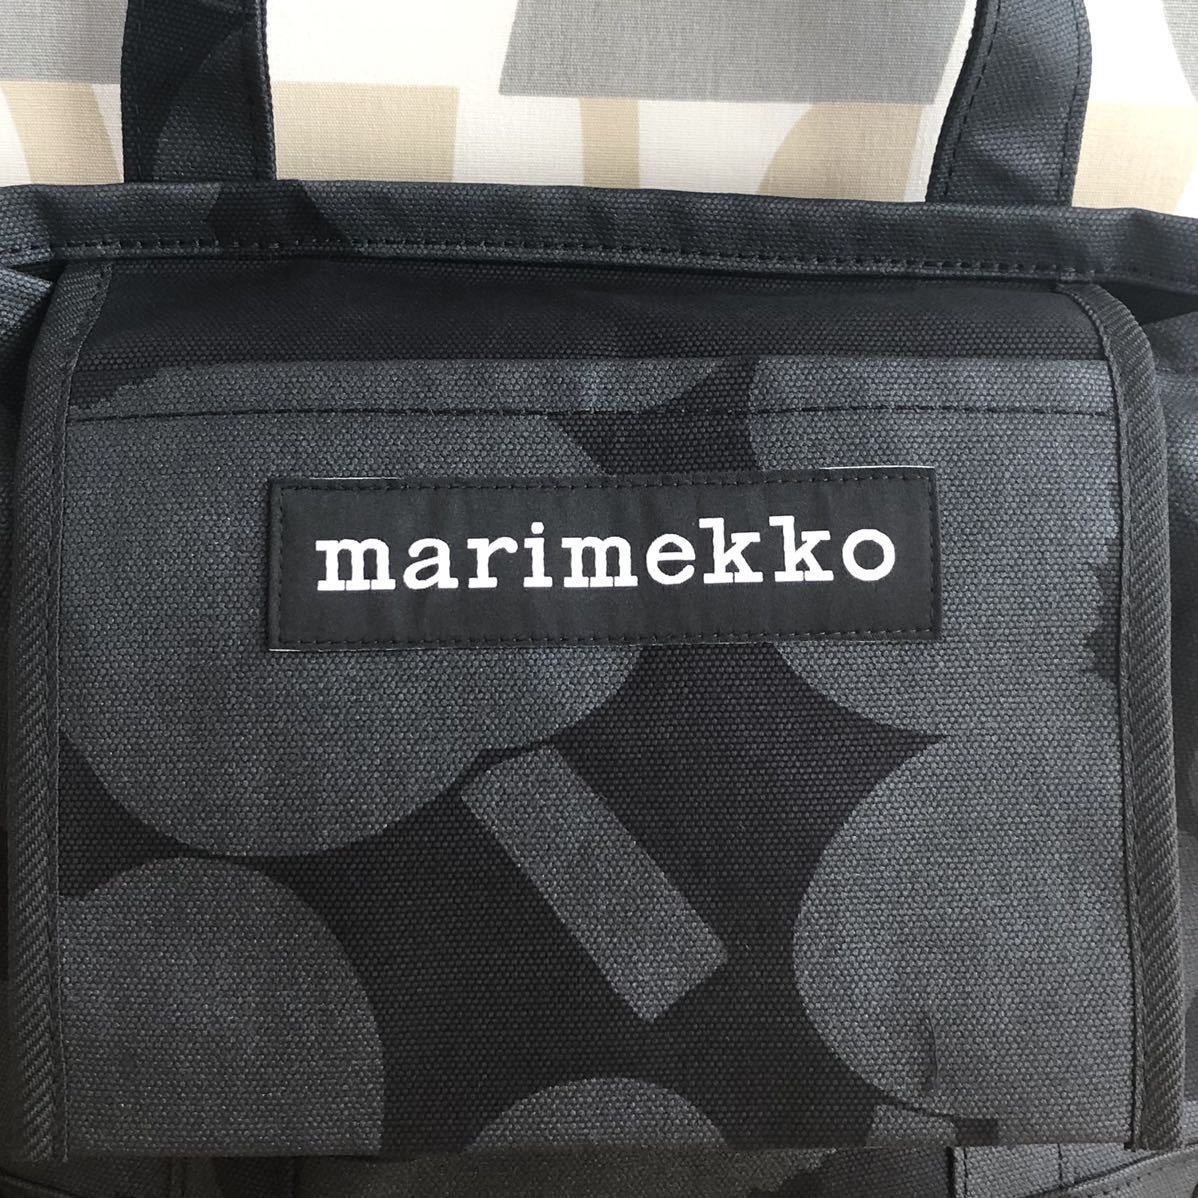 新品 marimekko SEIDI WX PIENI UNIKKO マリメッコ ピエニ ウニッコ セイディトートバッグ